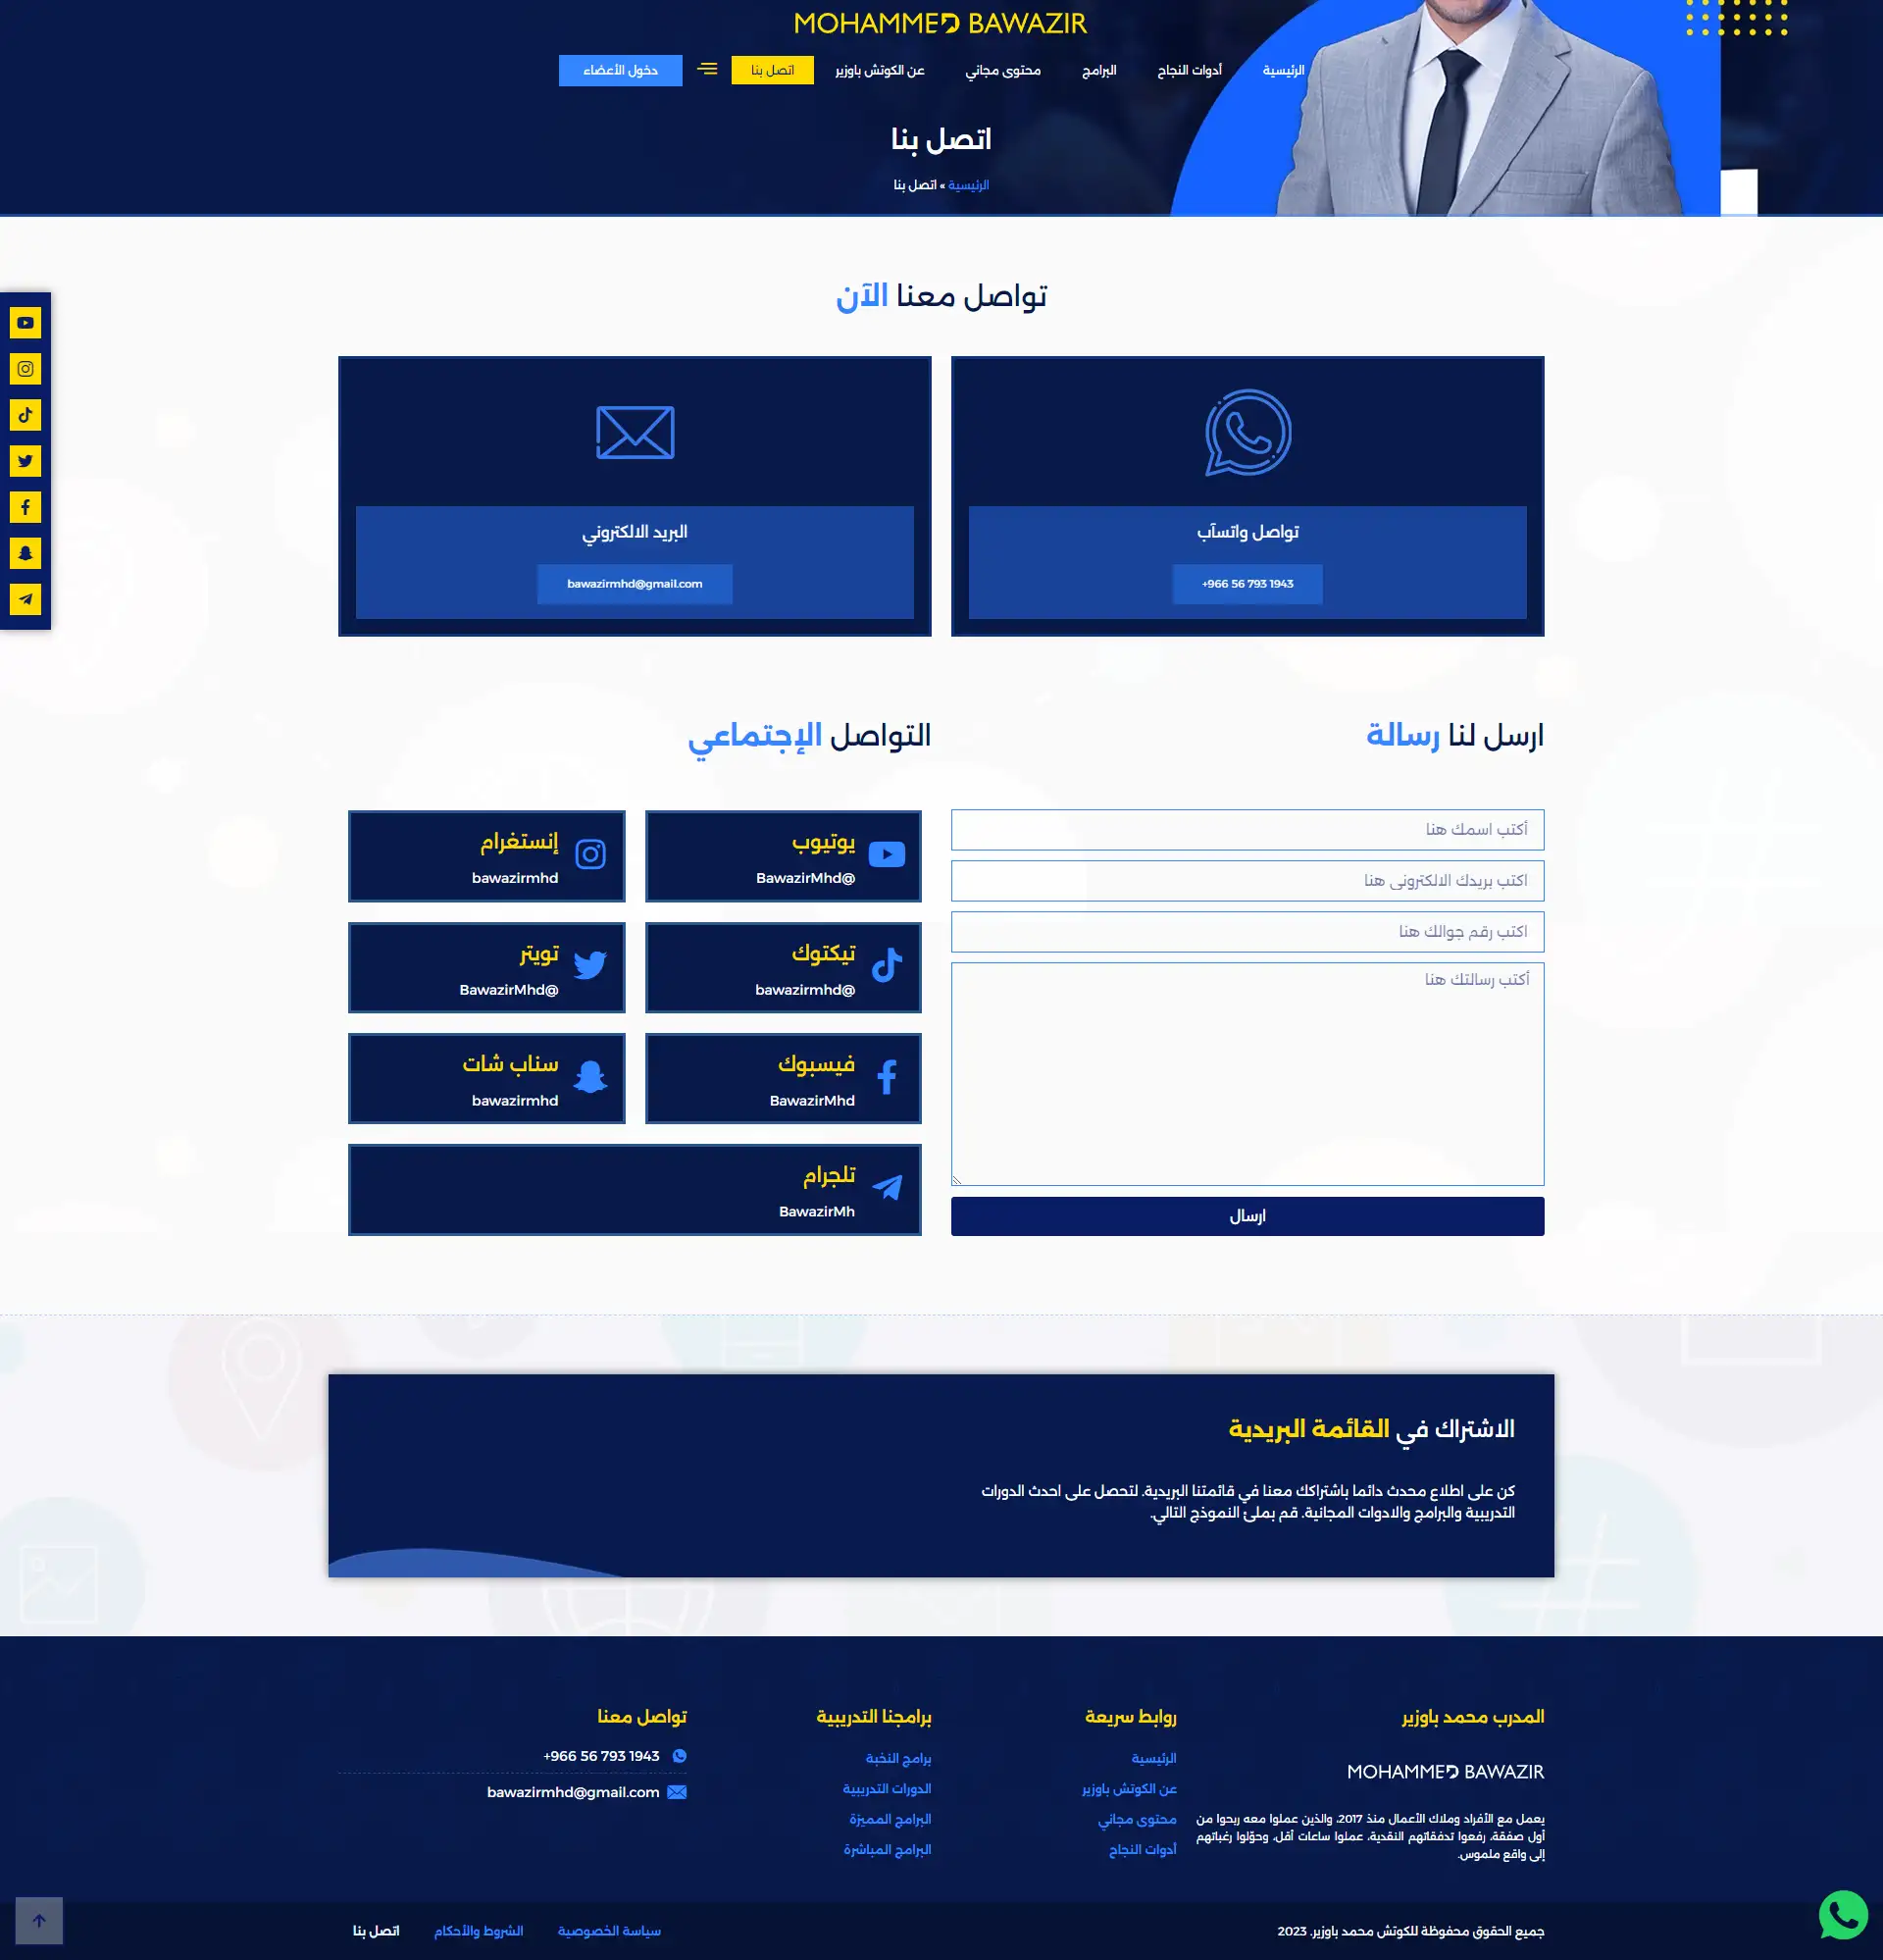 Coach Mohamad Bawazir Website Design